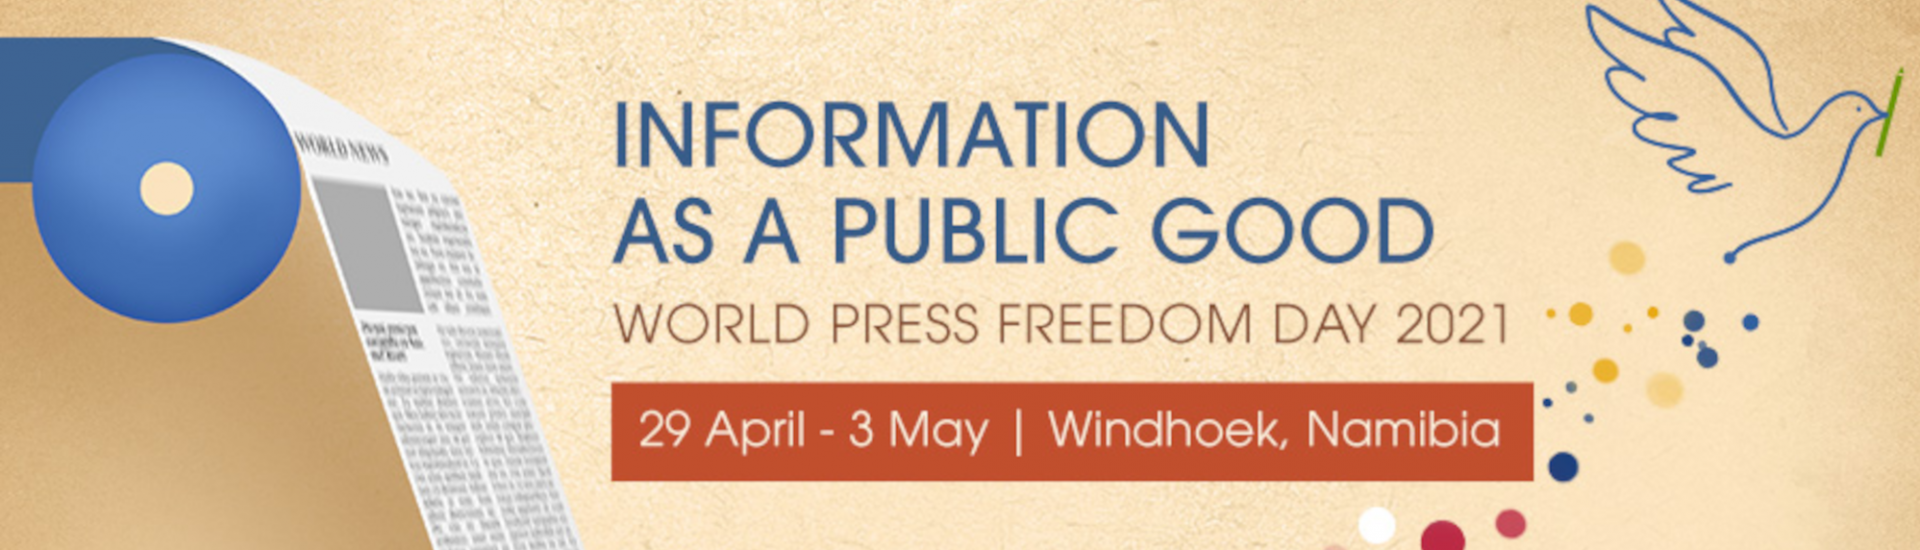 Aankondiging van de World Press Freedom Conferentie 2021